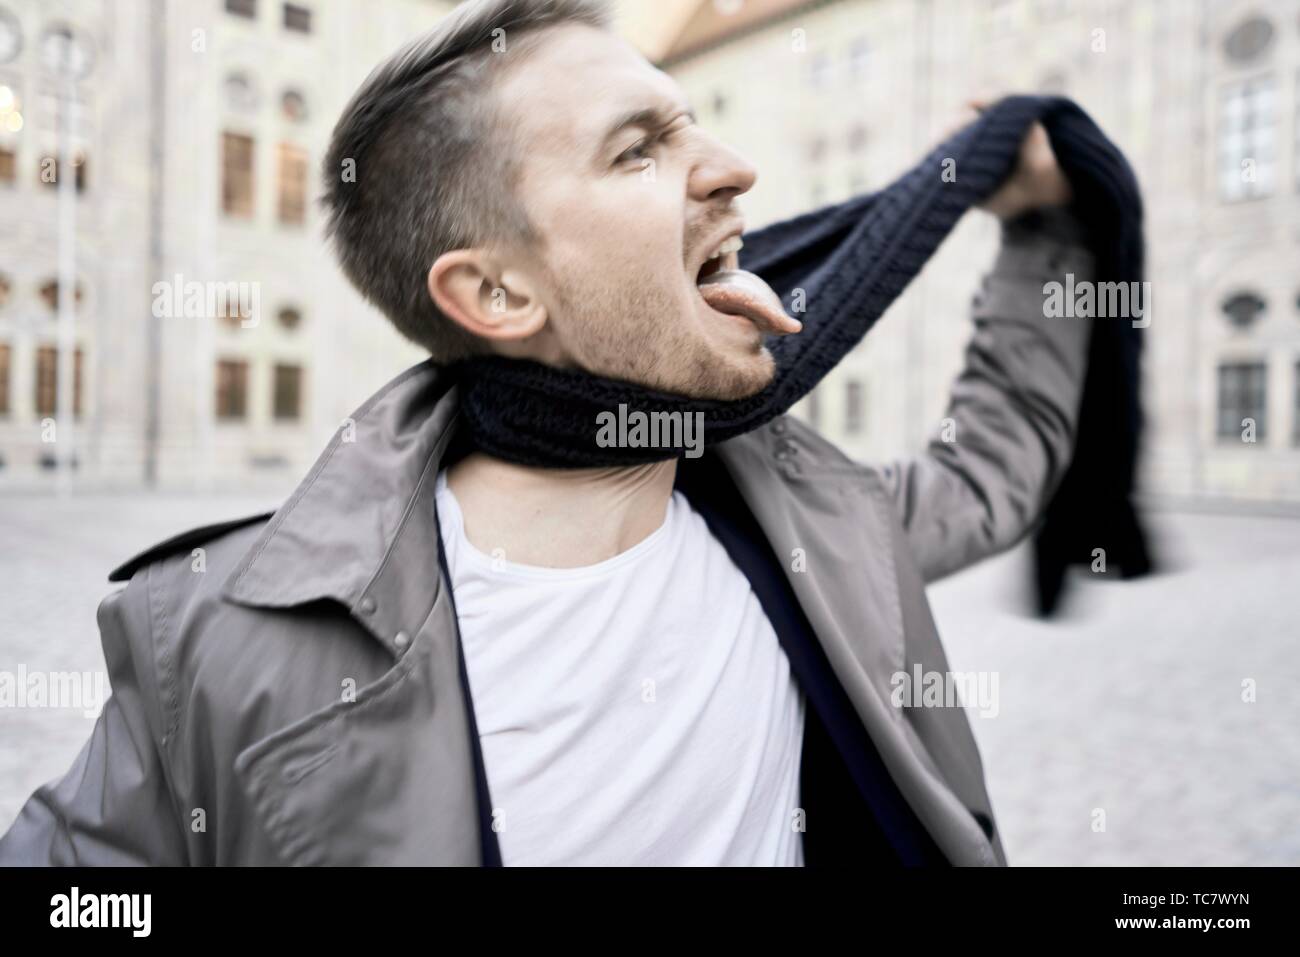 Der Mensch selbst mit seinen eigenen Schal erdrosselt, München, Deutschland  Stockfotografie - Alamy